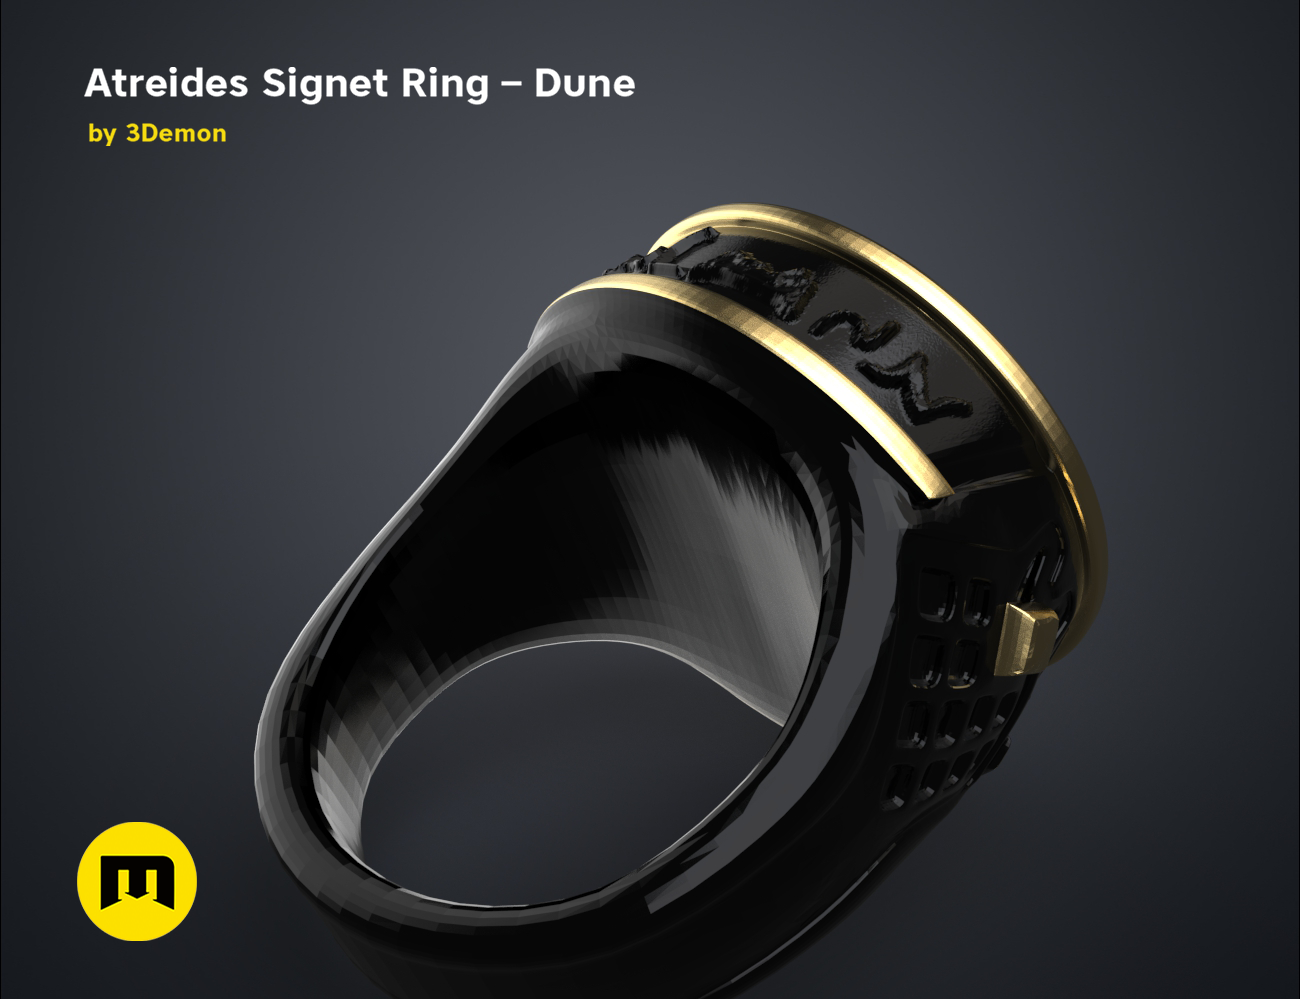 Atreides-ring-color.6.png Download free STL file Atreides Signet Ring - Dune • 3D printing template, 3D-mon